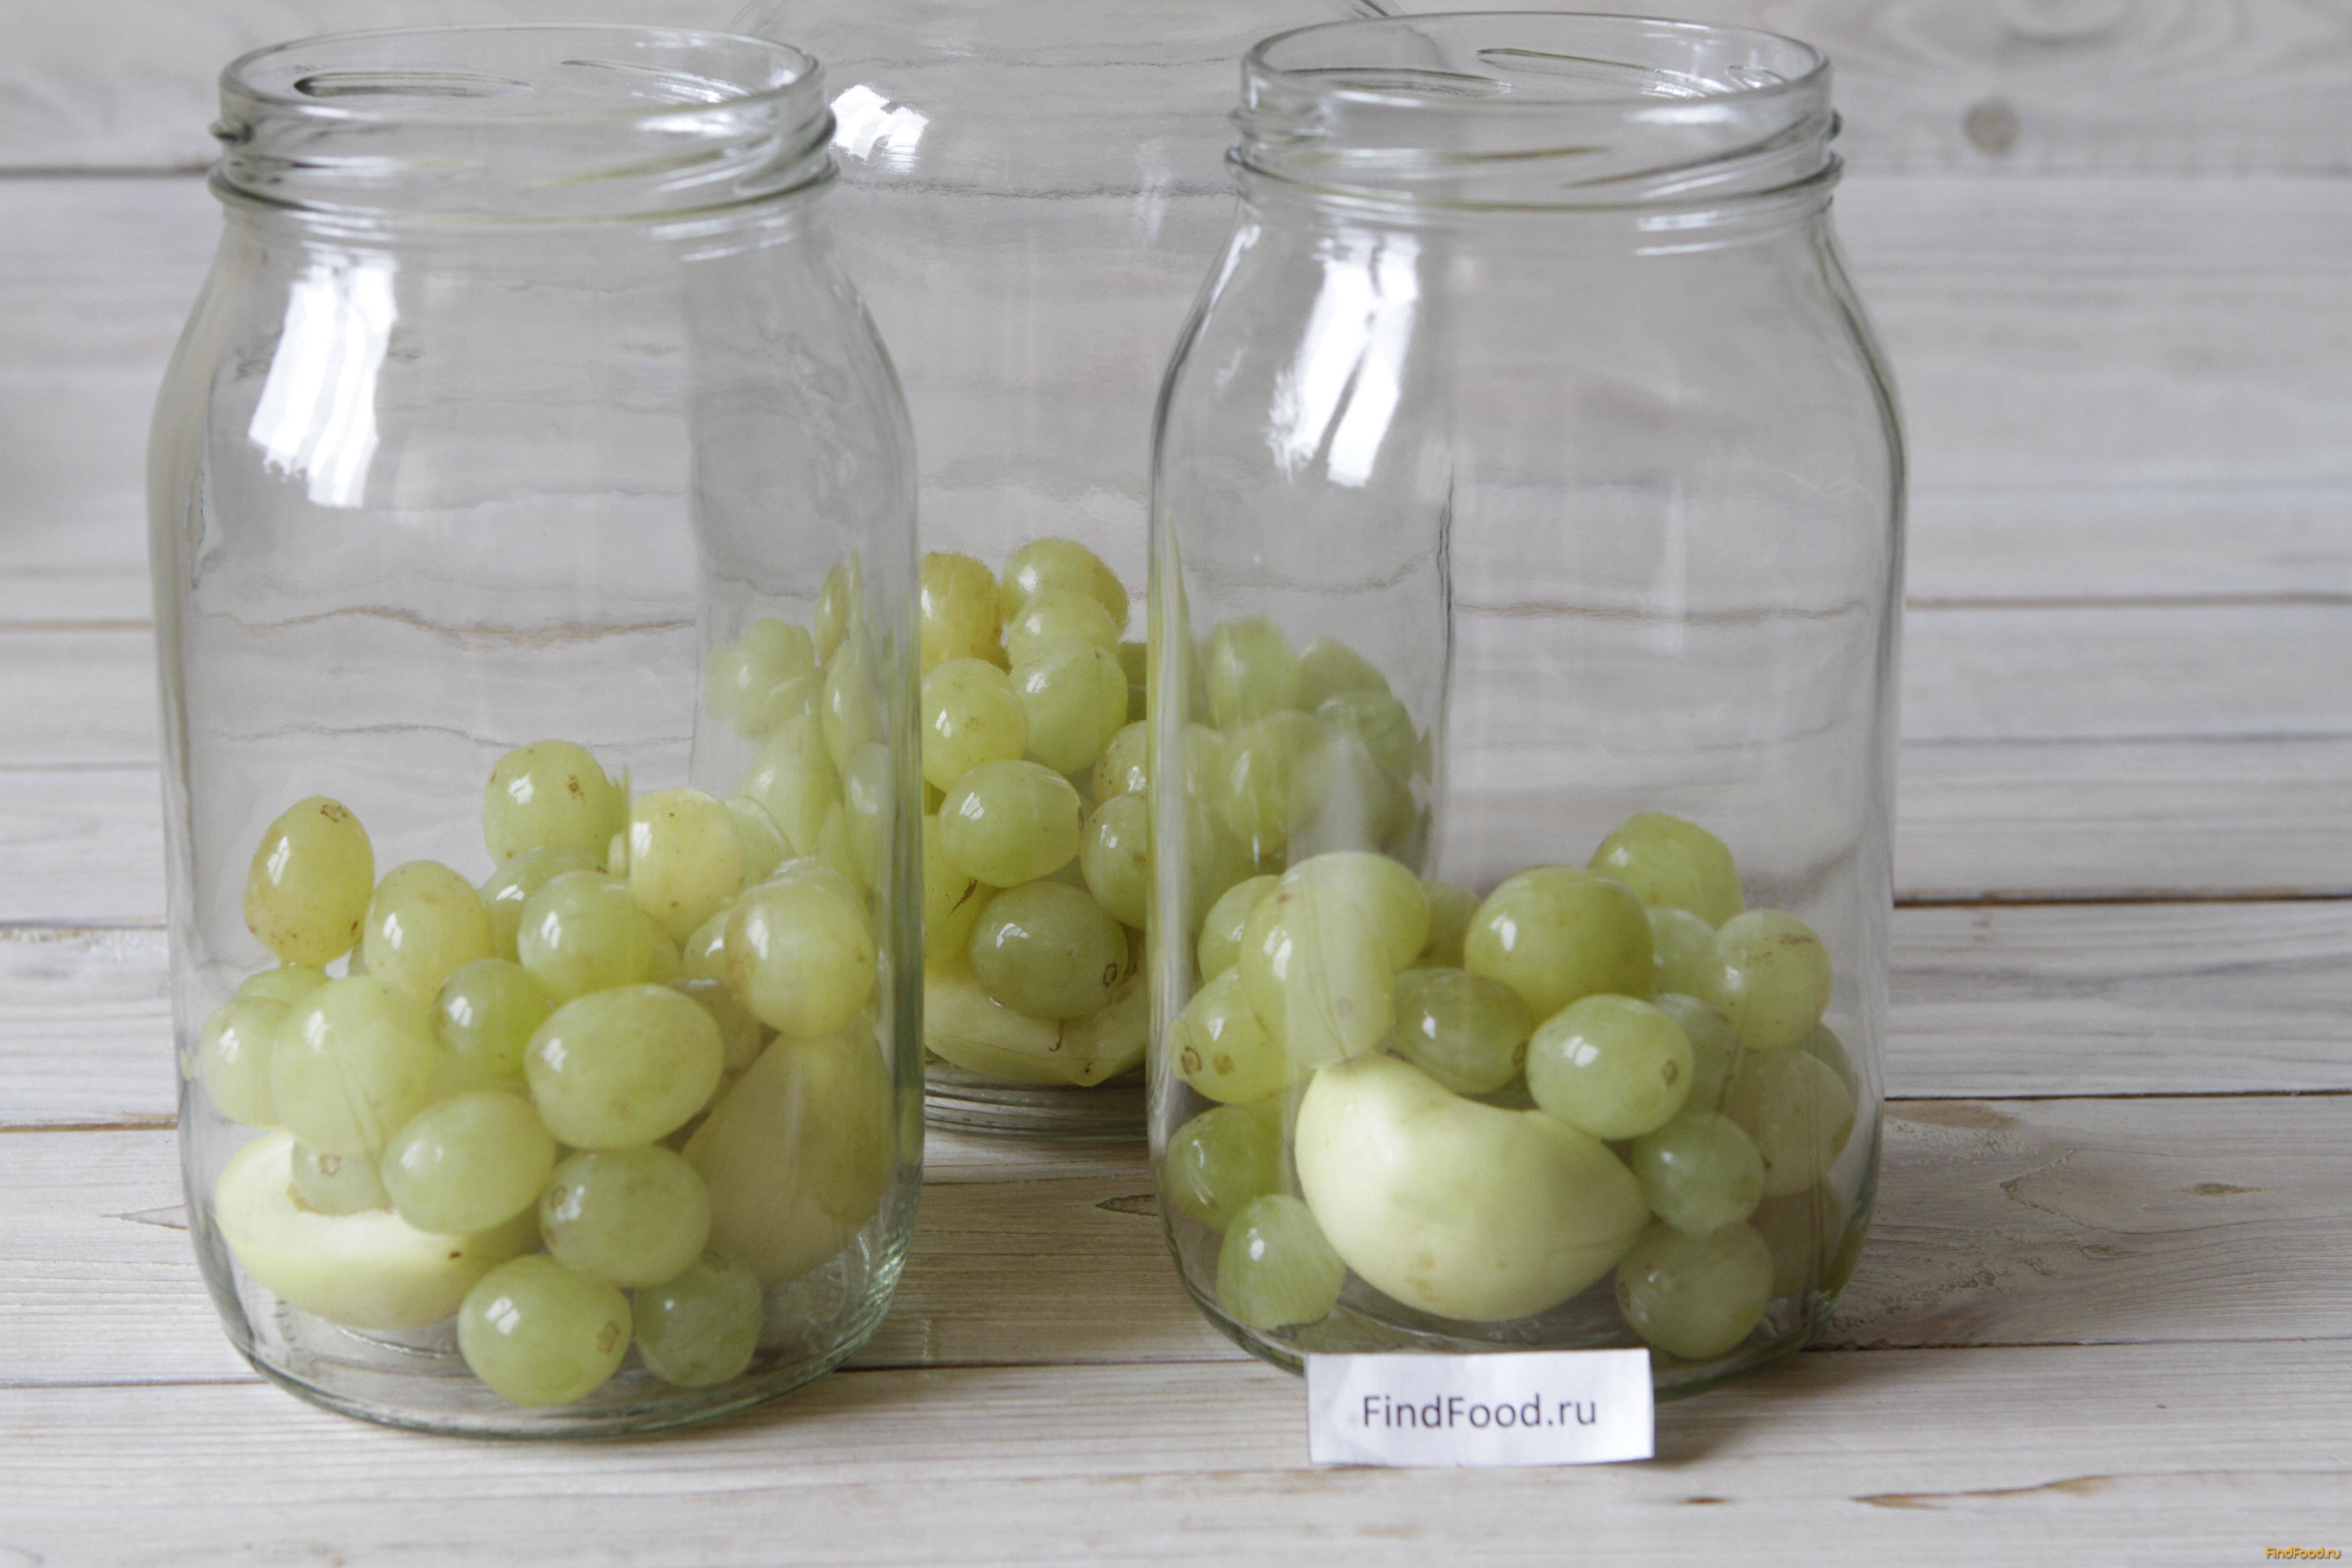 Простые рецепты приготовления компота из винограда на зиму на 1-3 литровую банку